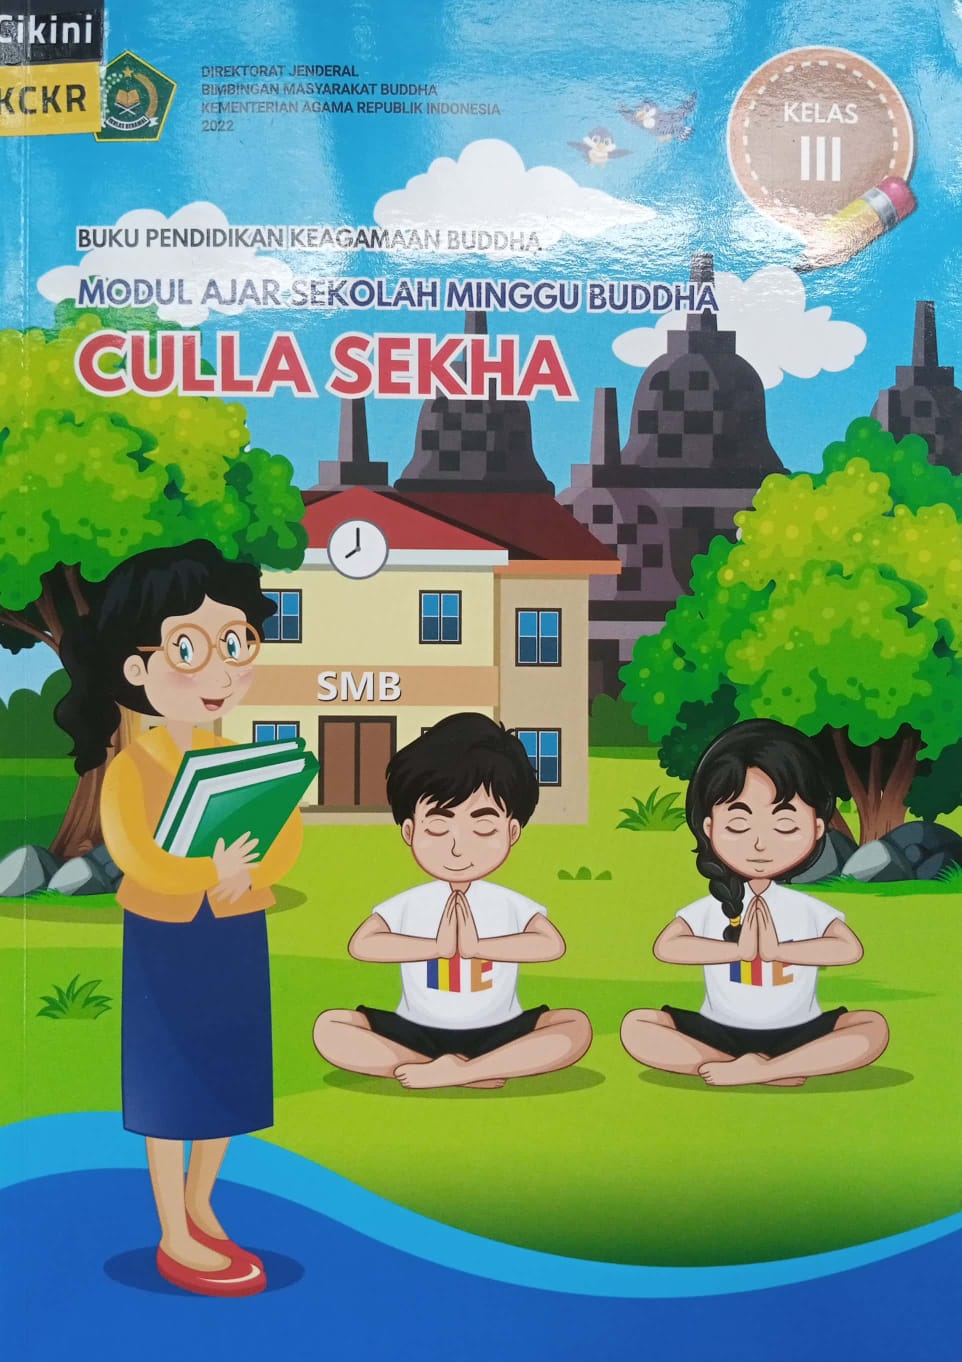 Buku pendidikan keagamaan Buddha modul ajar sekolah minggu Buddha culla sekha :  kelas III